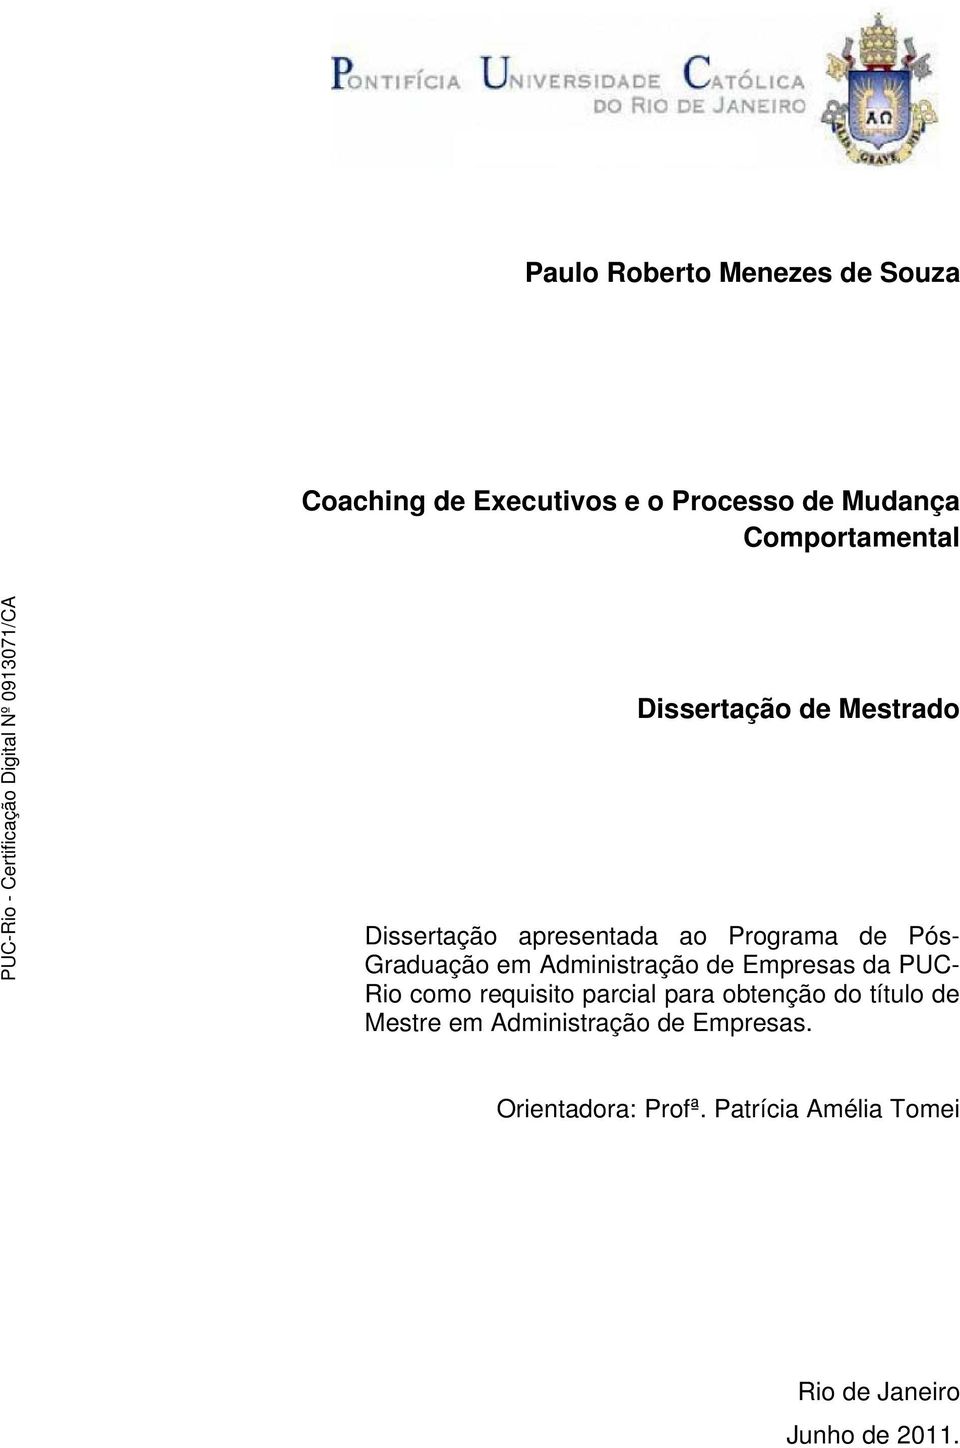 Administração de Empresas da PUC- Rio como requisito parcial para obtenção do título de